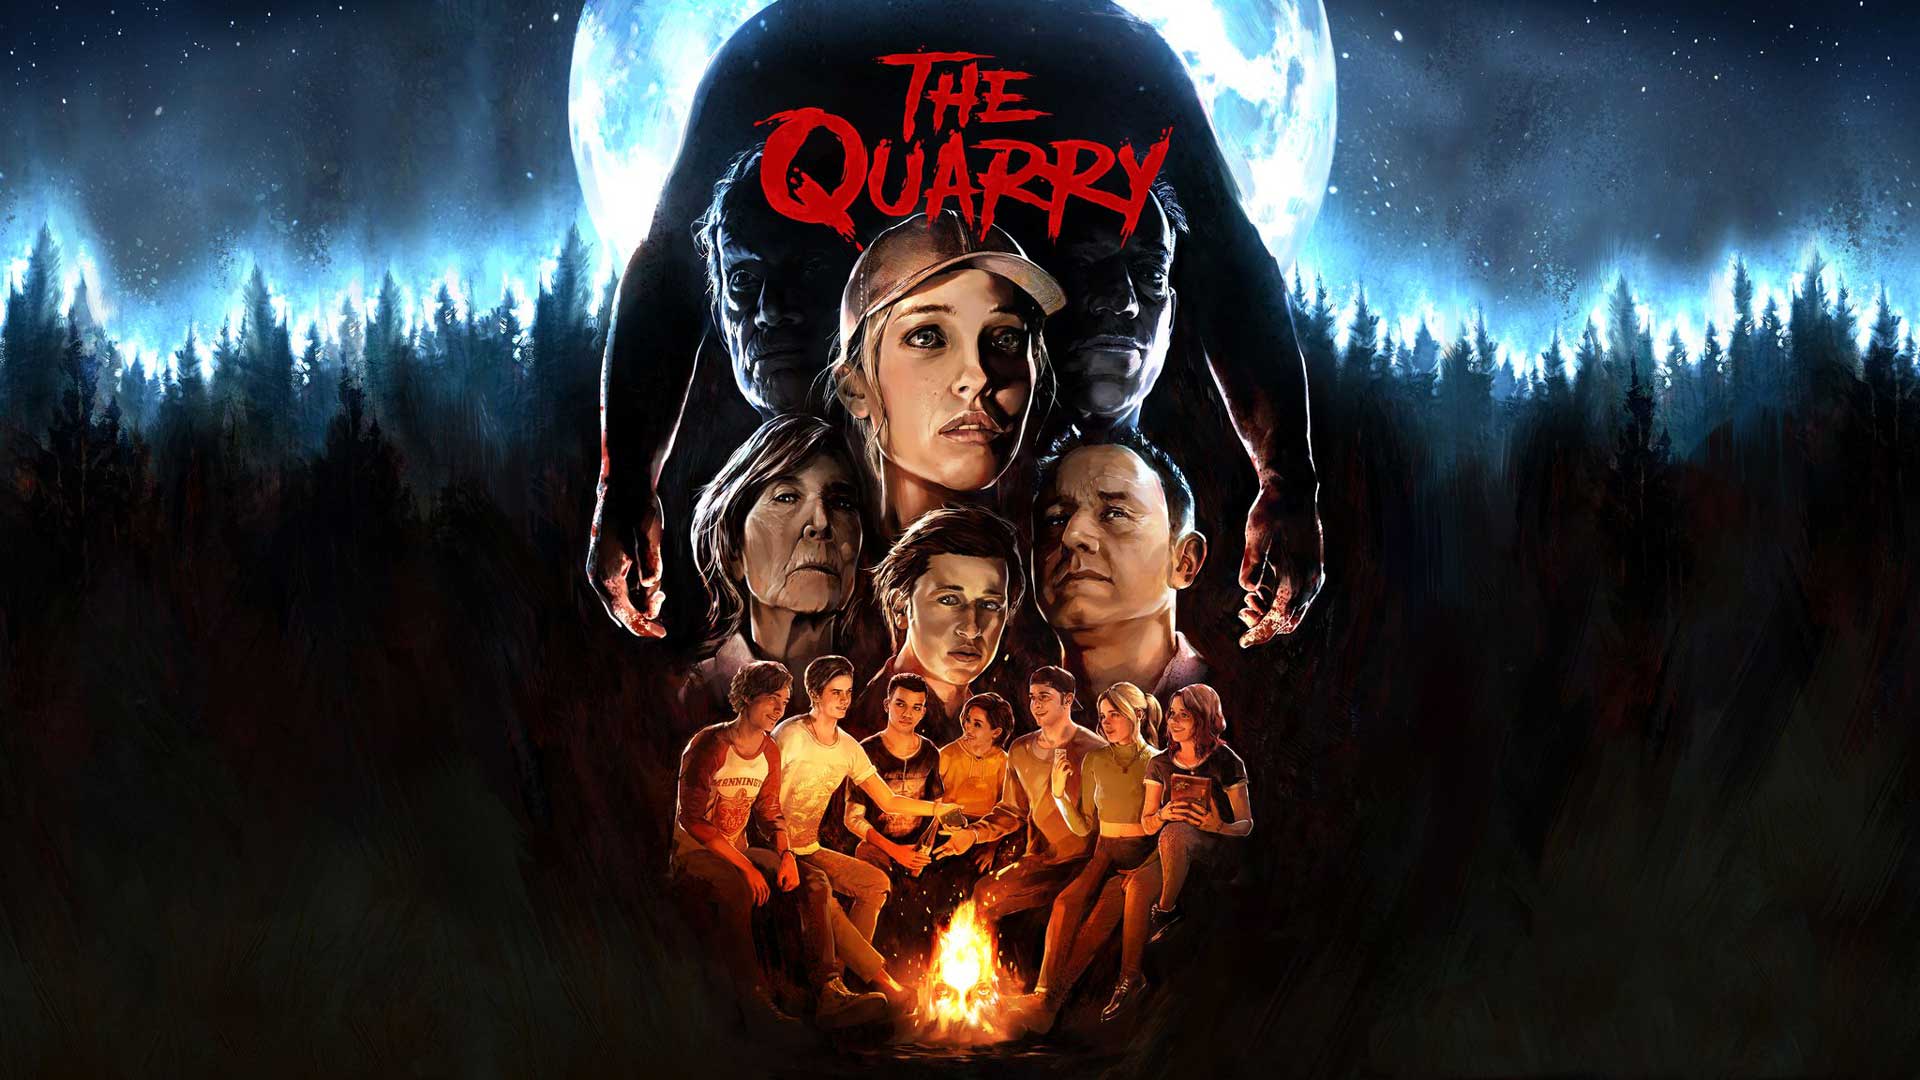 پوستر رسمی بازی The Quarry با لوگو قرمز این اثر ترسناک استودیو بریتانیایی سوپرمسیو گیمز و شرکت 2K Games